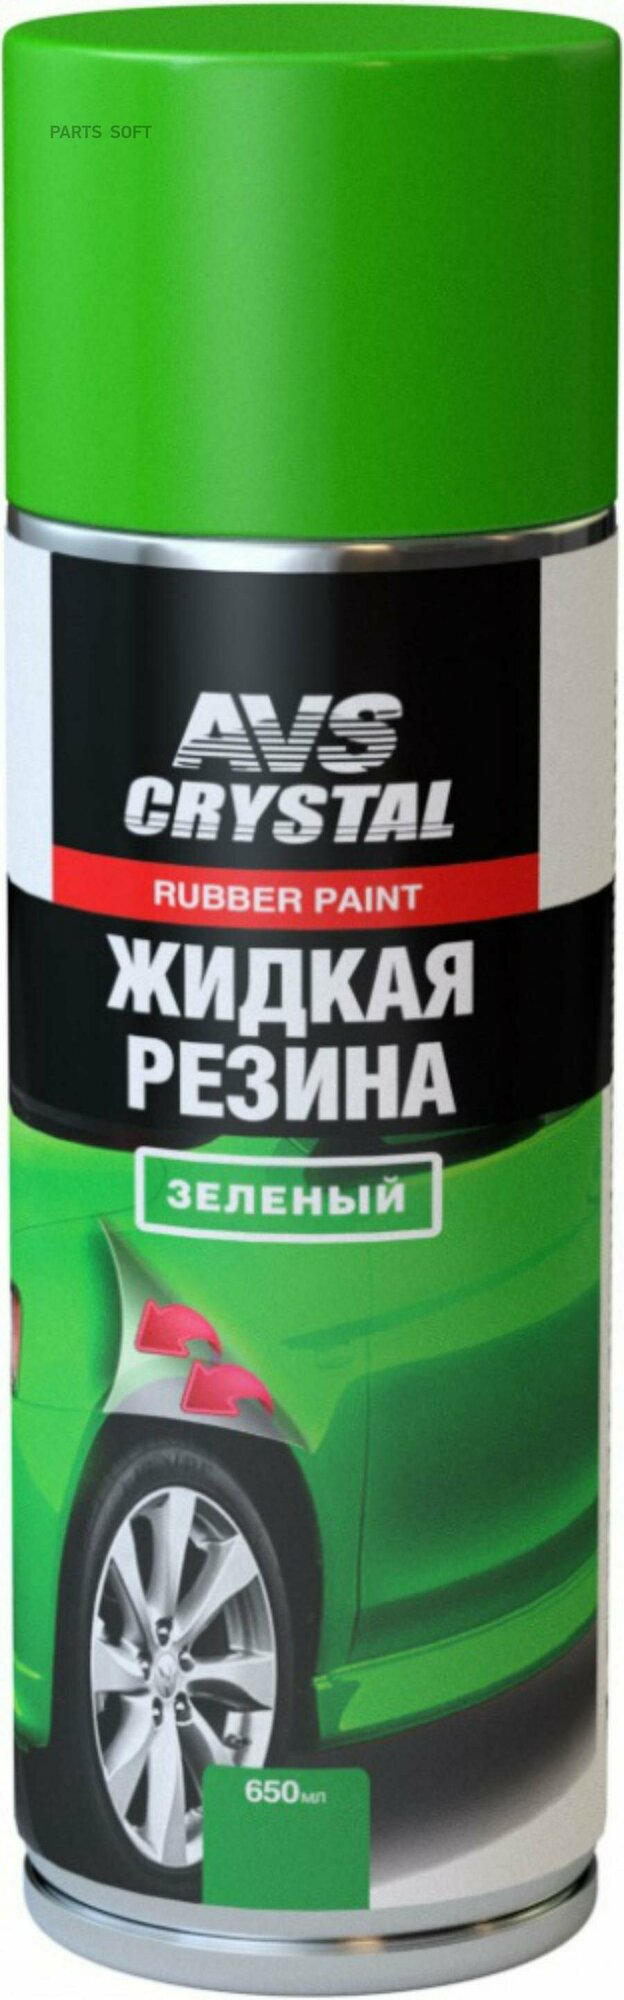 Жидкая резина "зеленый" 650 мл (аэрозоль) AVS AVK-307 AVS / арт. A78920S - (1 шт)